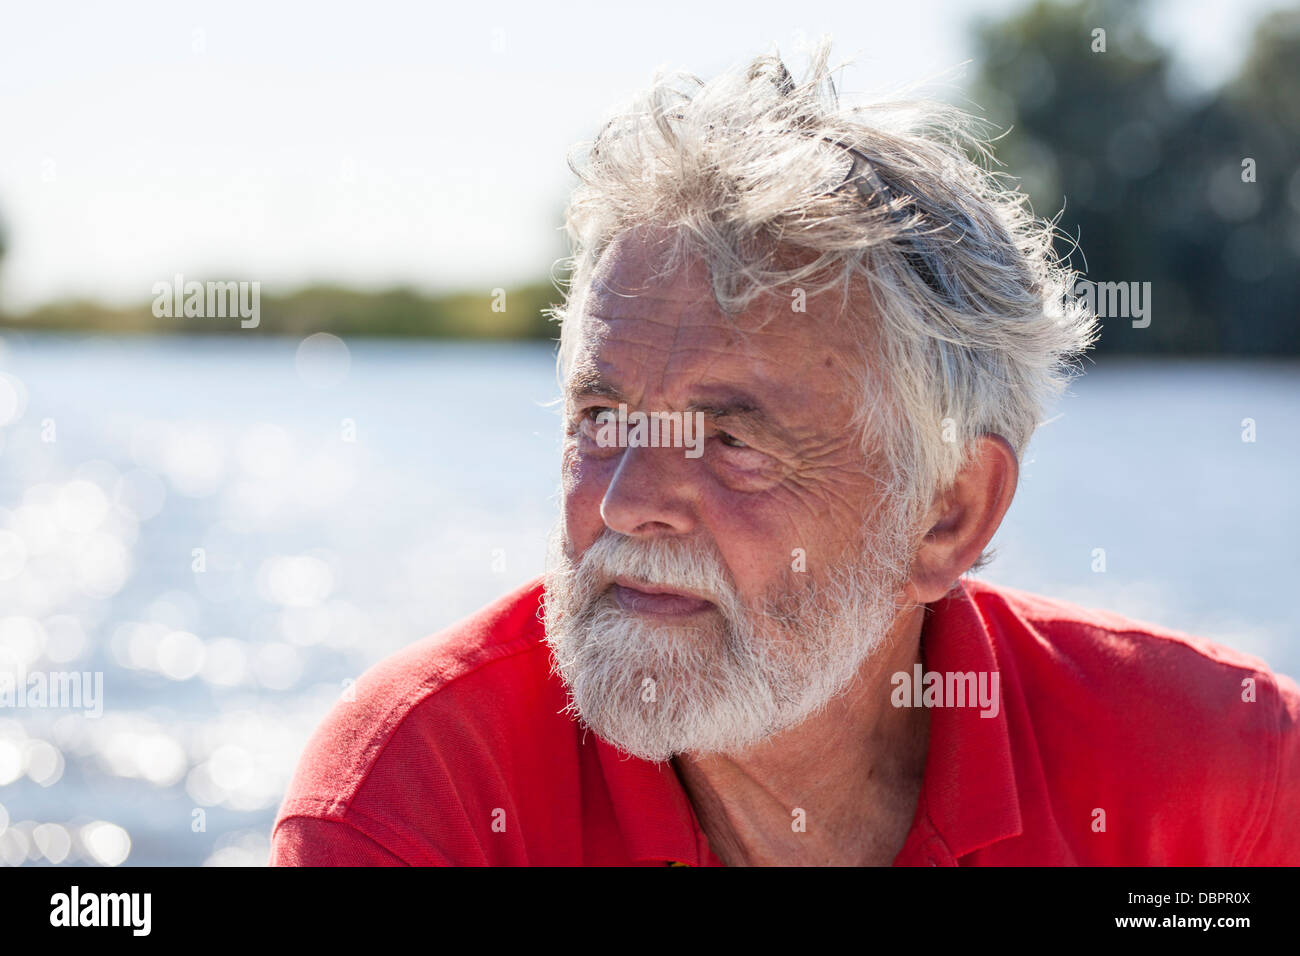 Ritratto di uomo anziano 60-70 con la barba con acqua in background Foto Stock